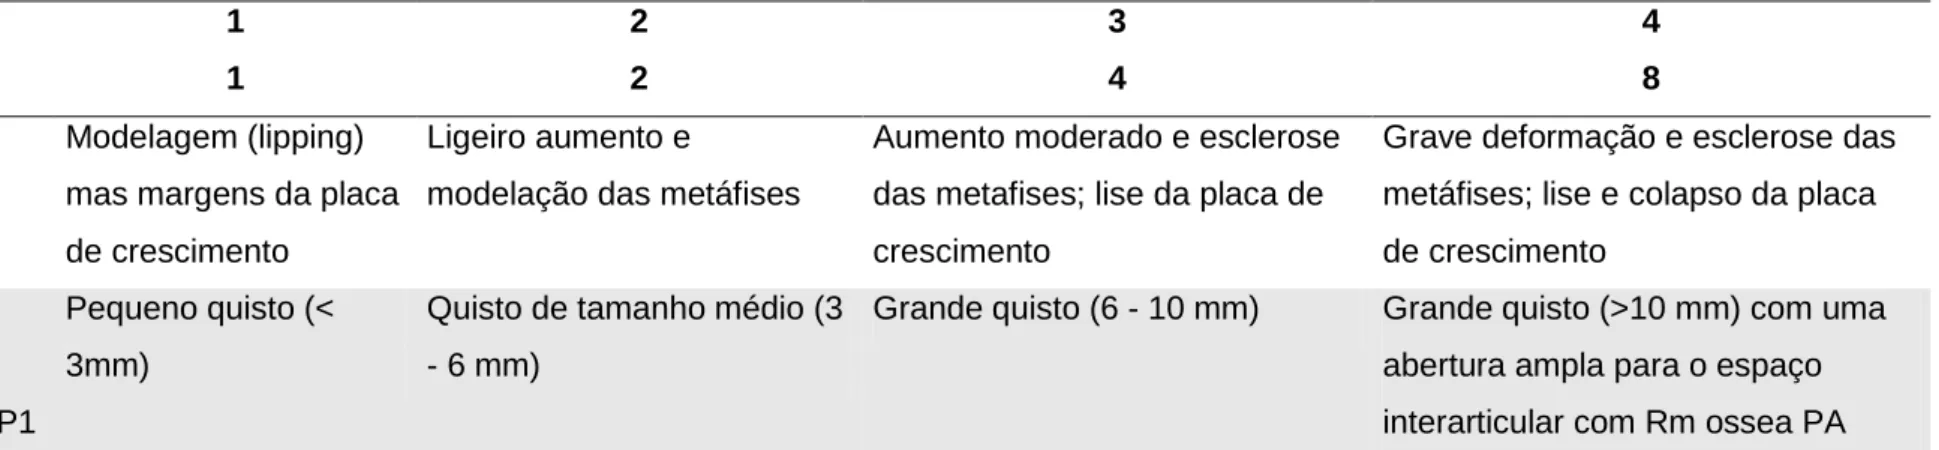 Tabela 5: (continuação) Parâmetros e critérios usados para avaliar a severidade das evidências radiográficas nos casos mais comuns de JOCC, adaptado  de Denoix 2013